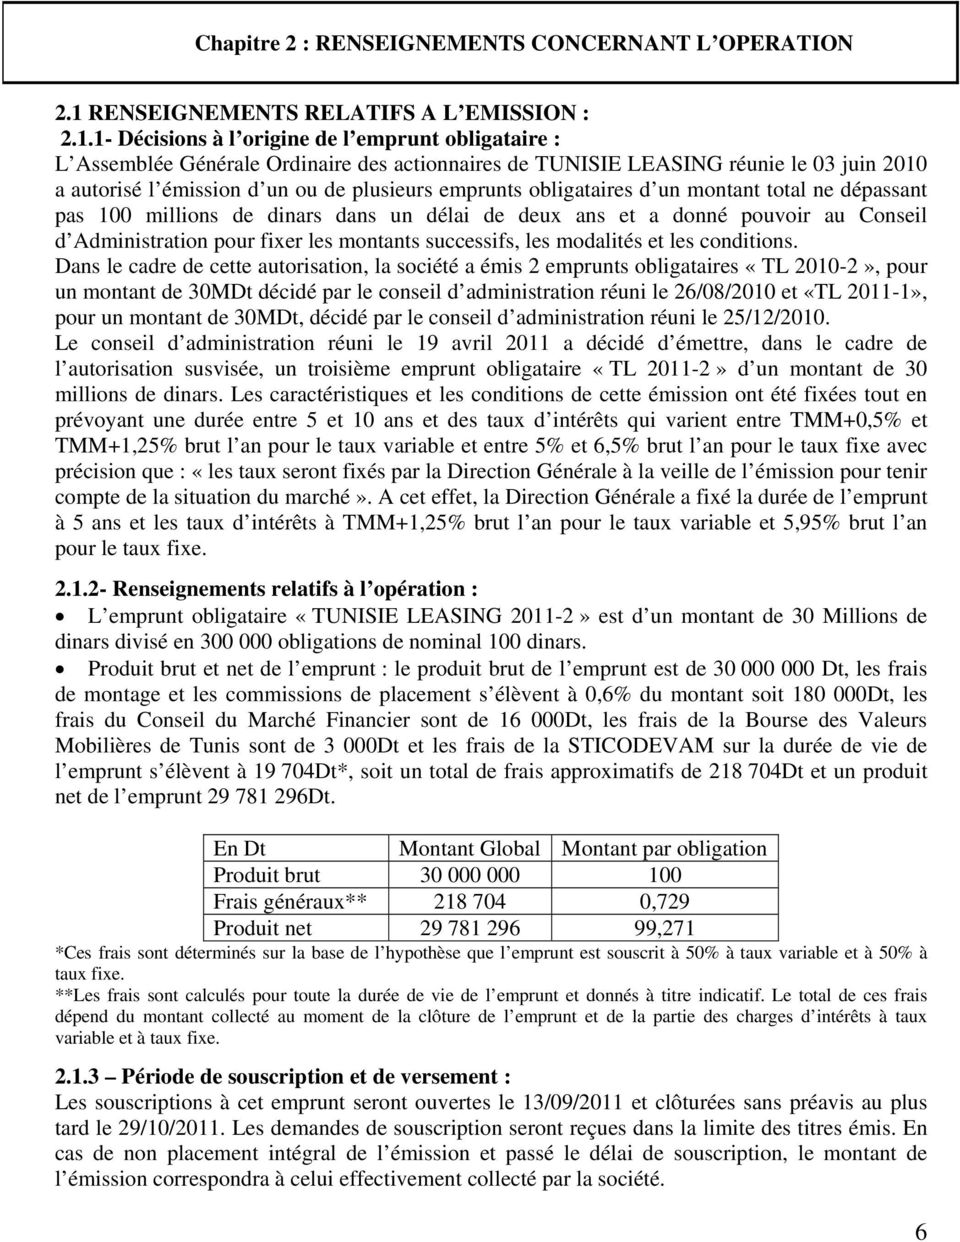 1- Décisions à l origine de l emprunt obligataire : L Assemblée Générale Ordinaire des actionnaires de TUNISIE LEASING réunie le 03 juin 2010 a autorisé l émission d un ou de plusieurs emprunts